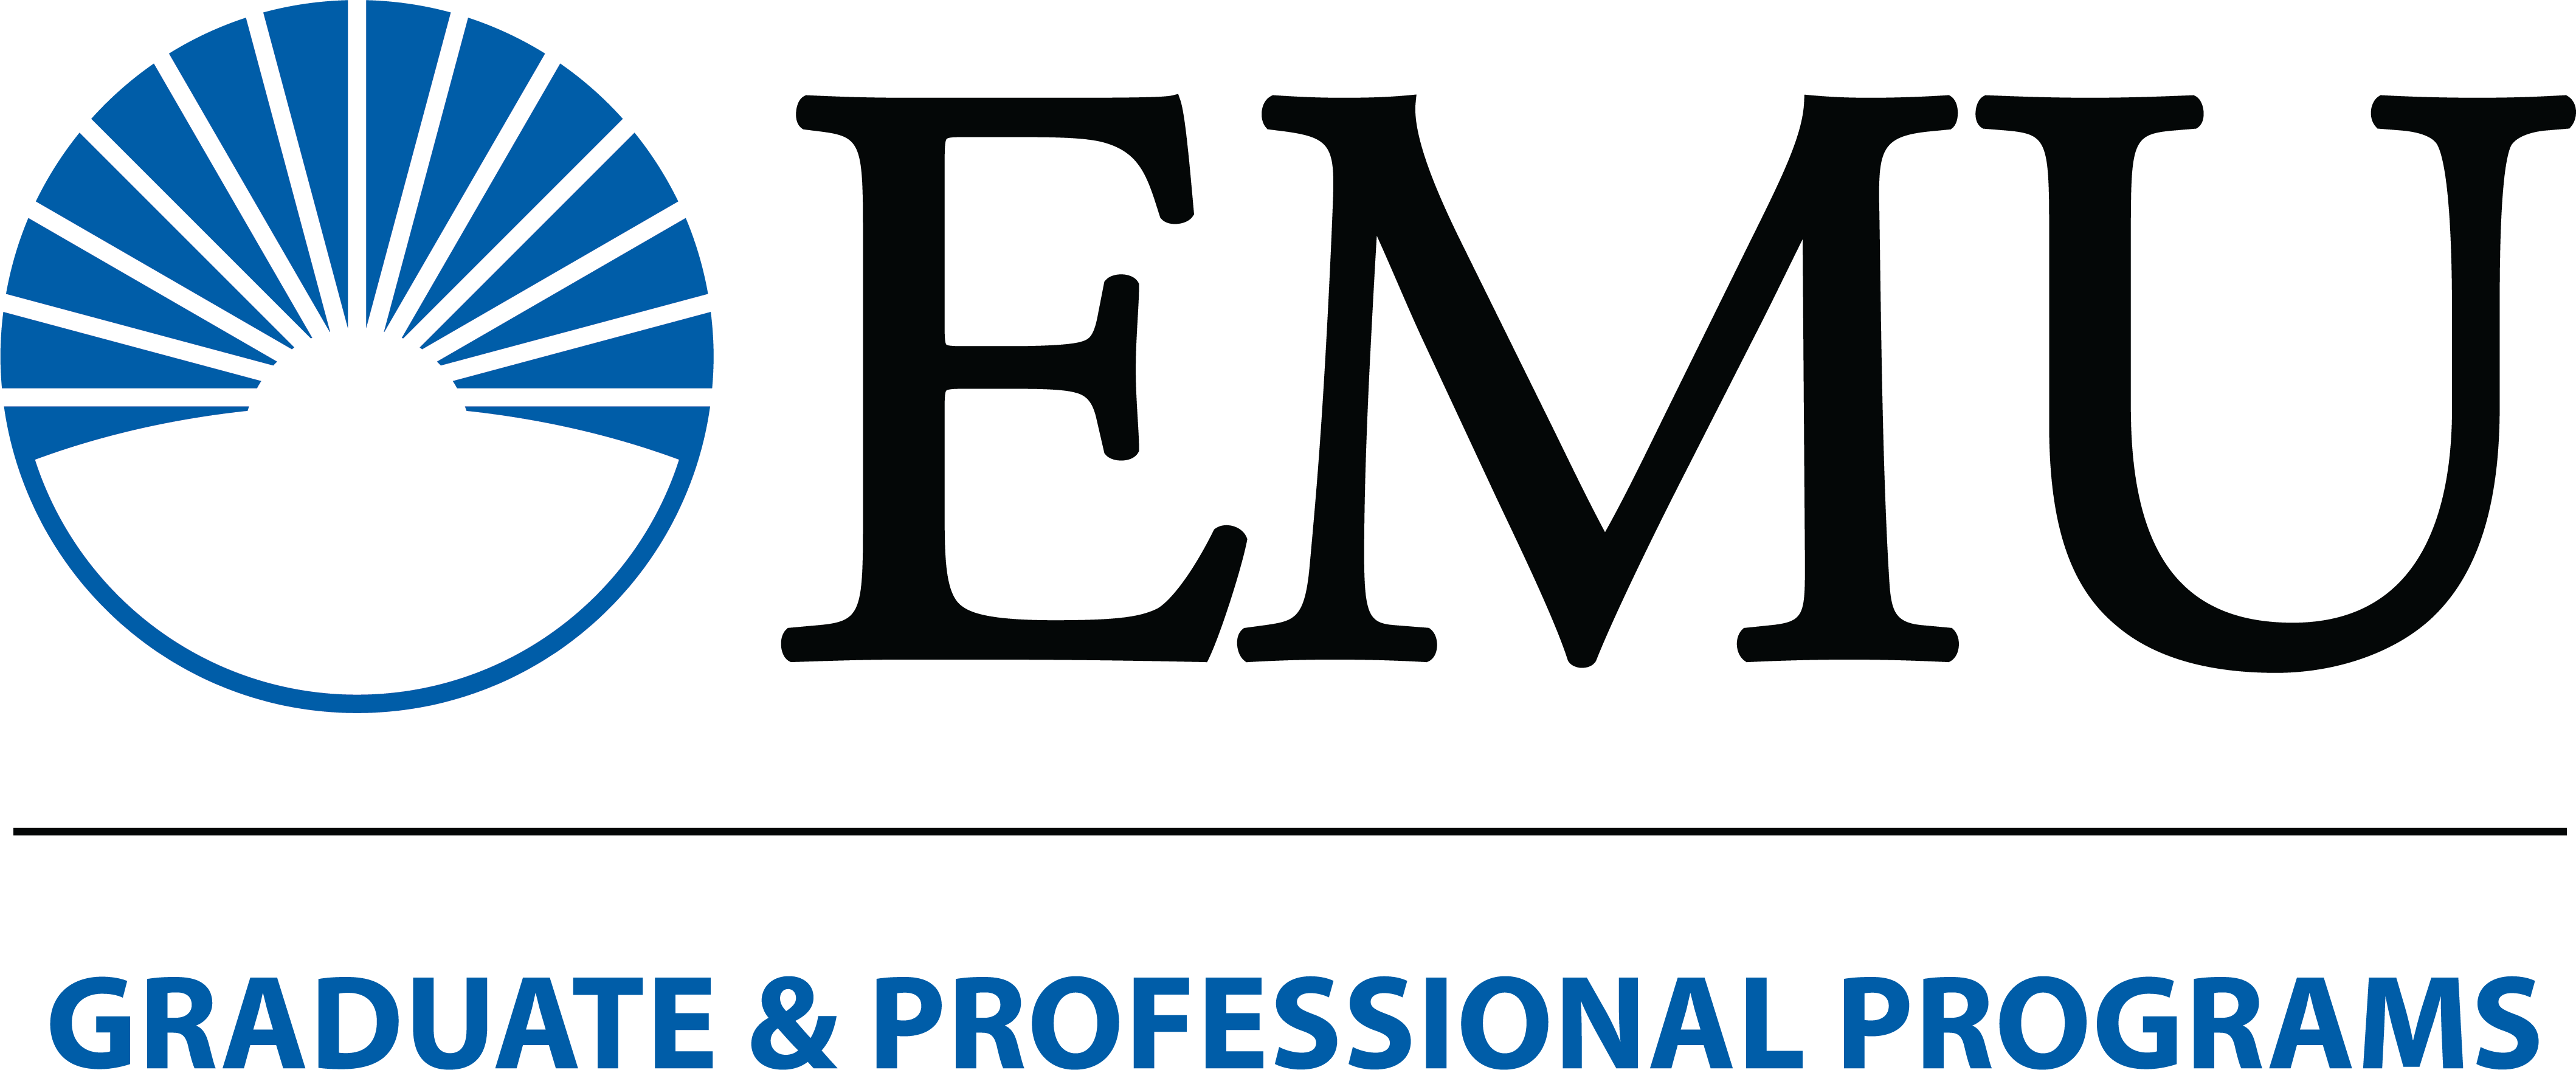 EMU Graduate Logo